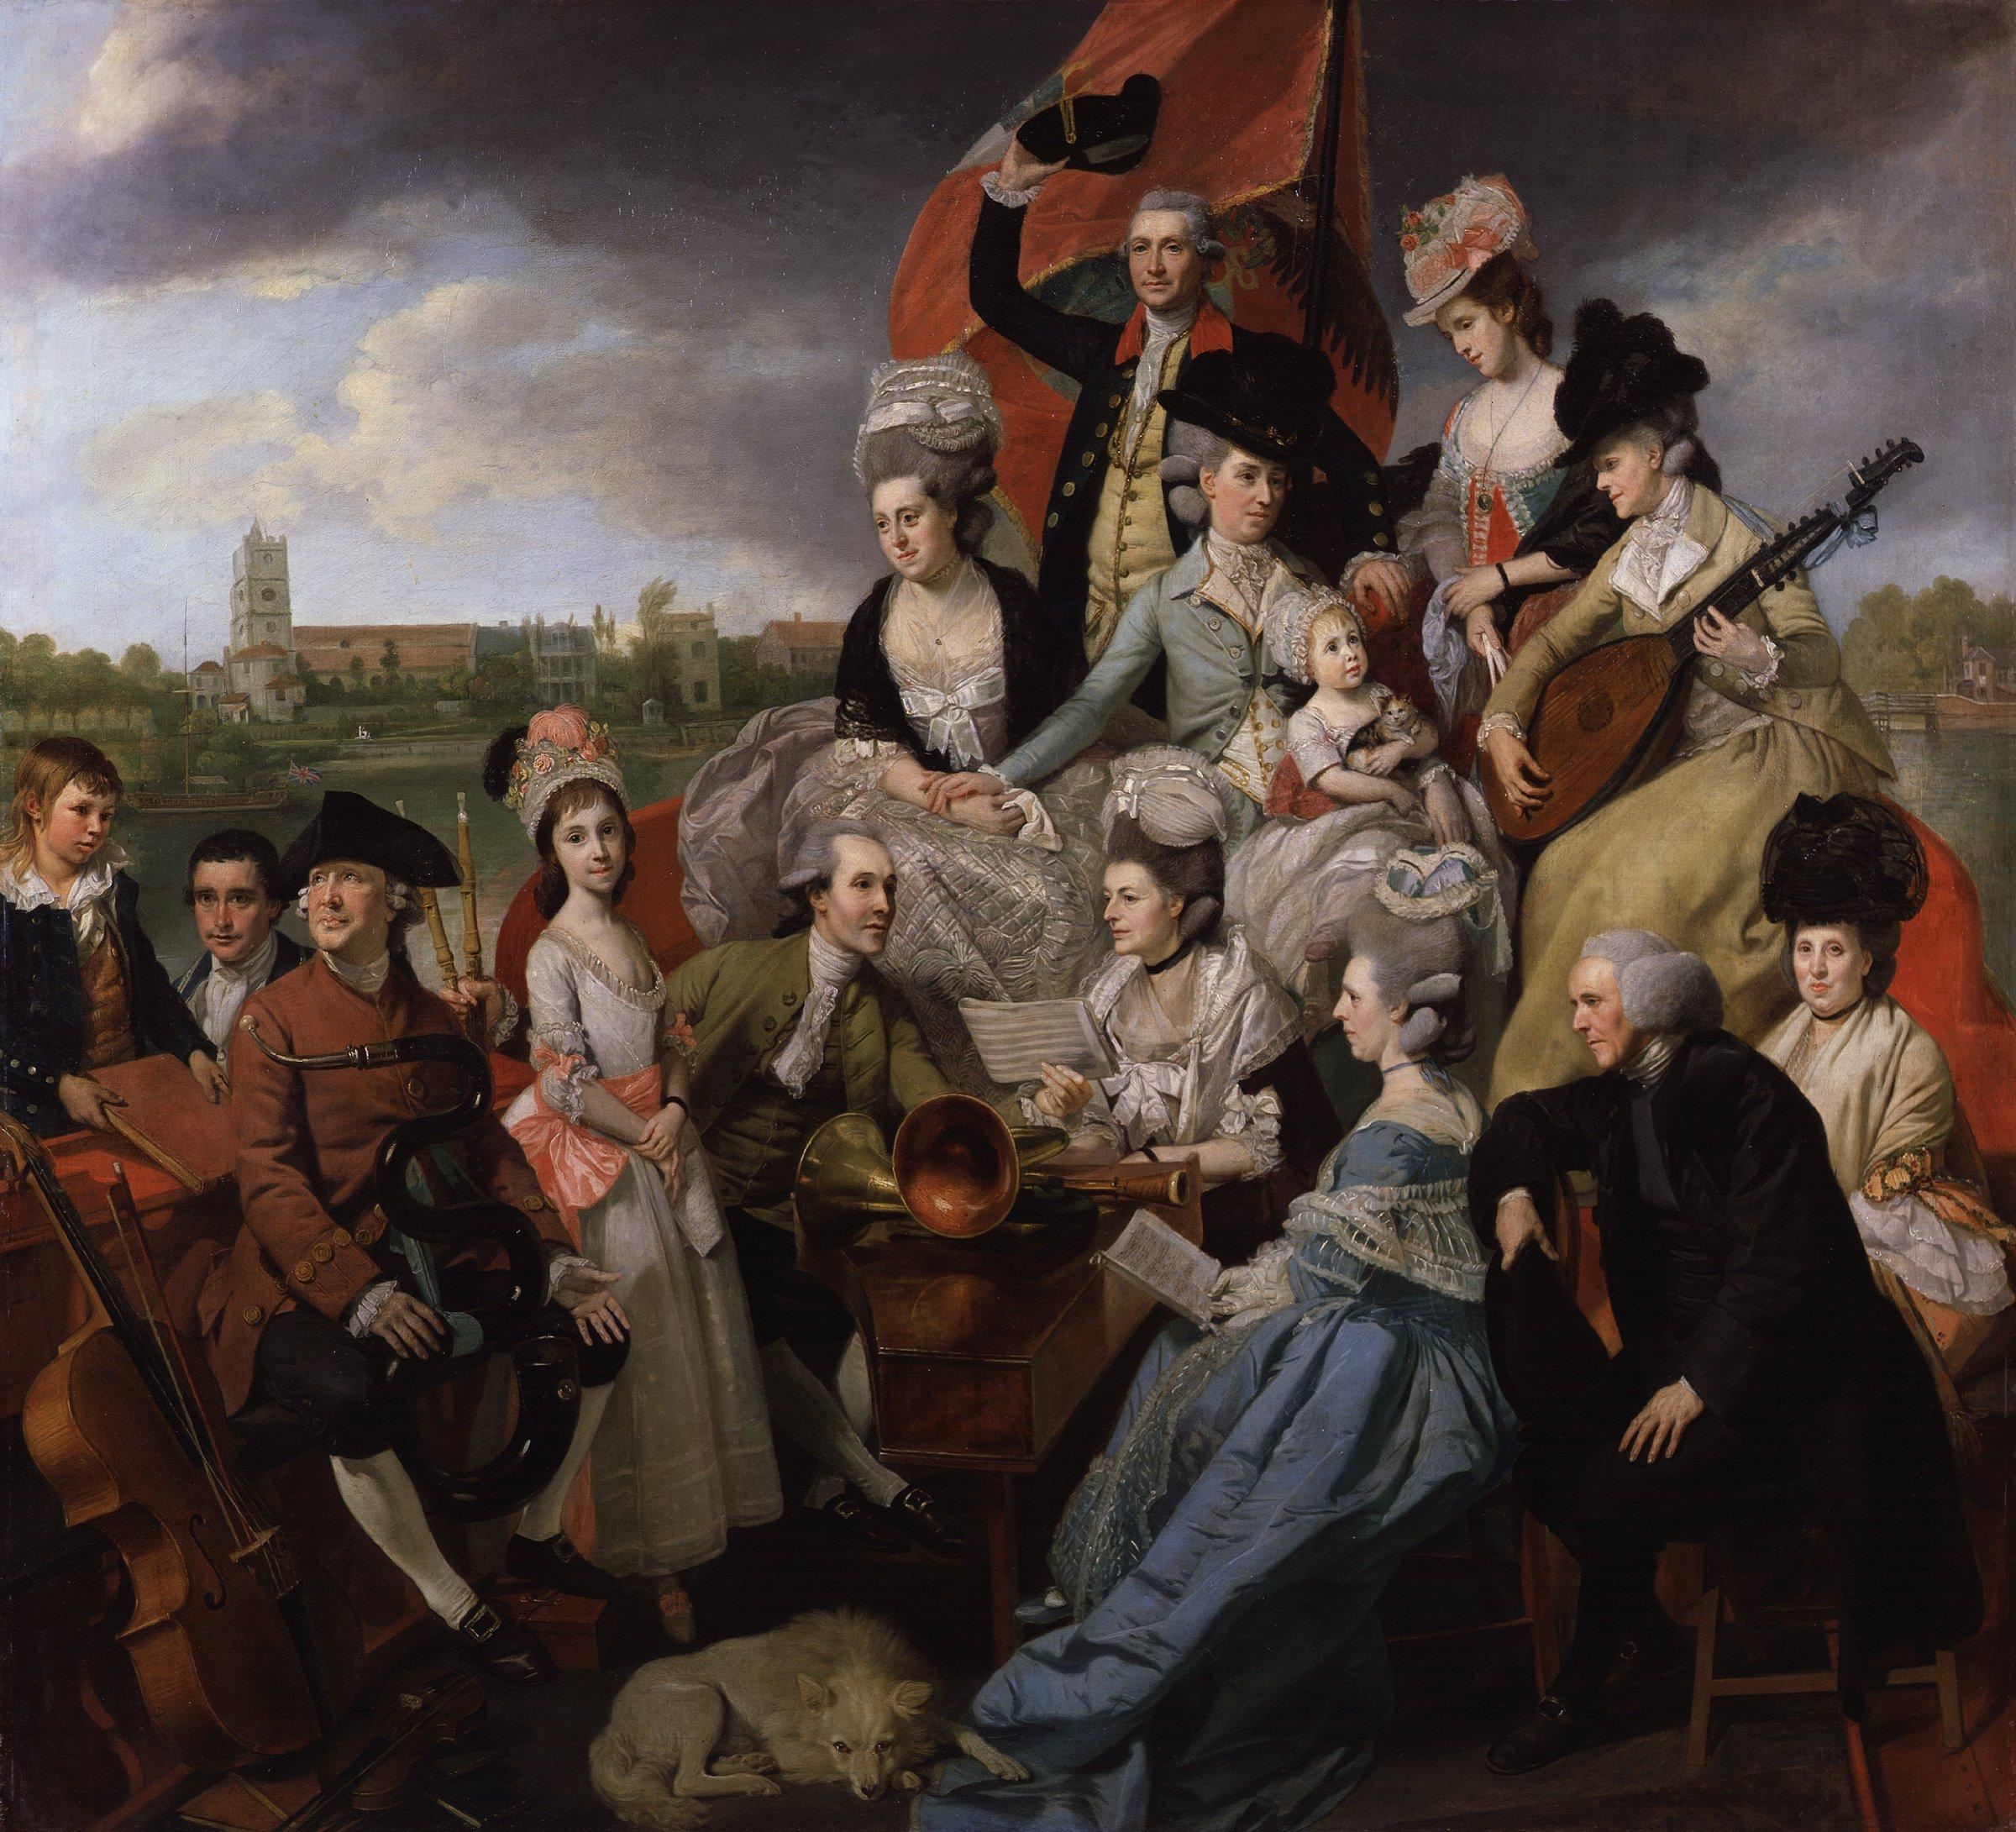 The Sharp Family by Johann Zoffany